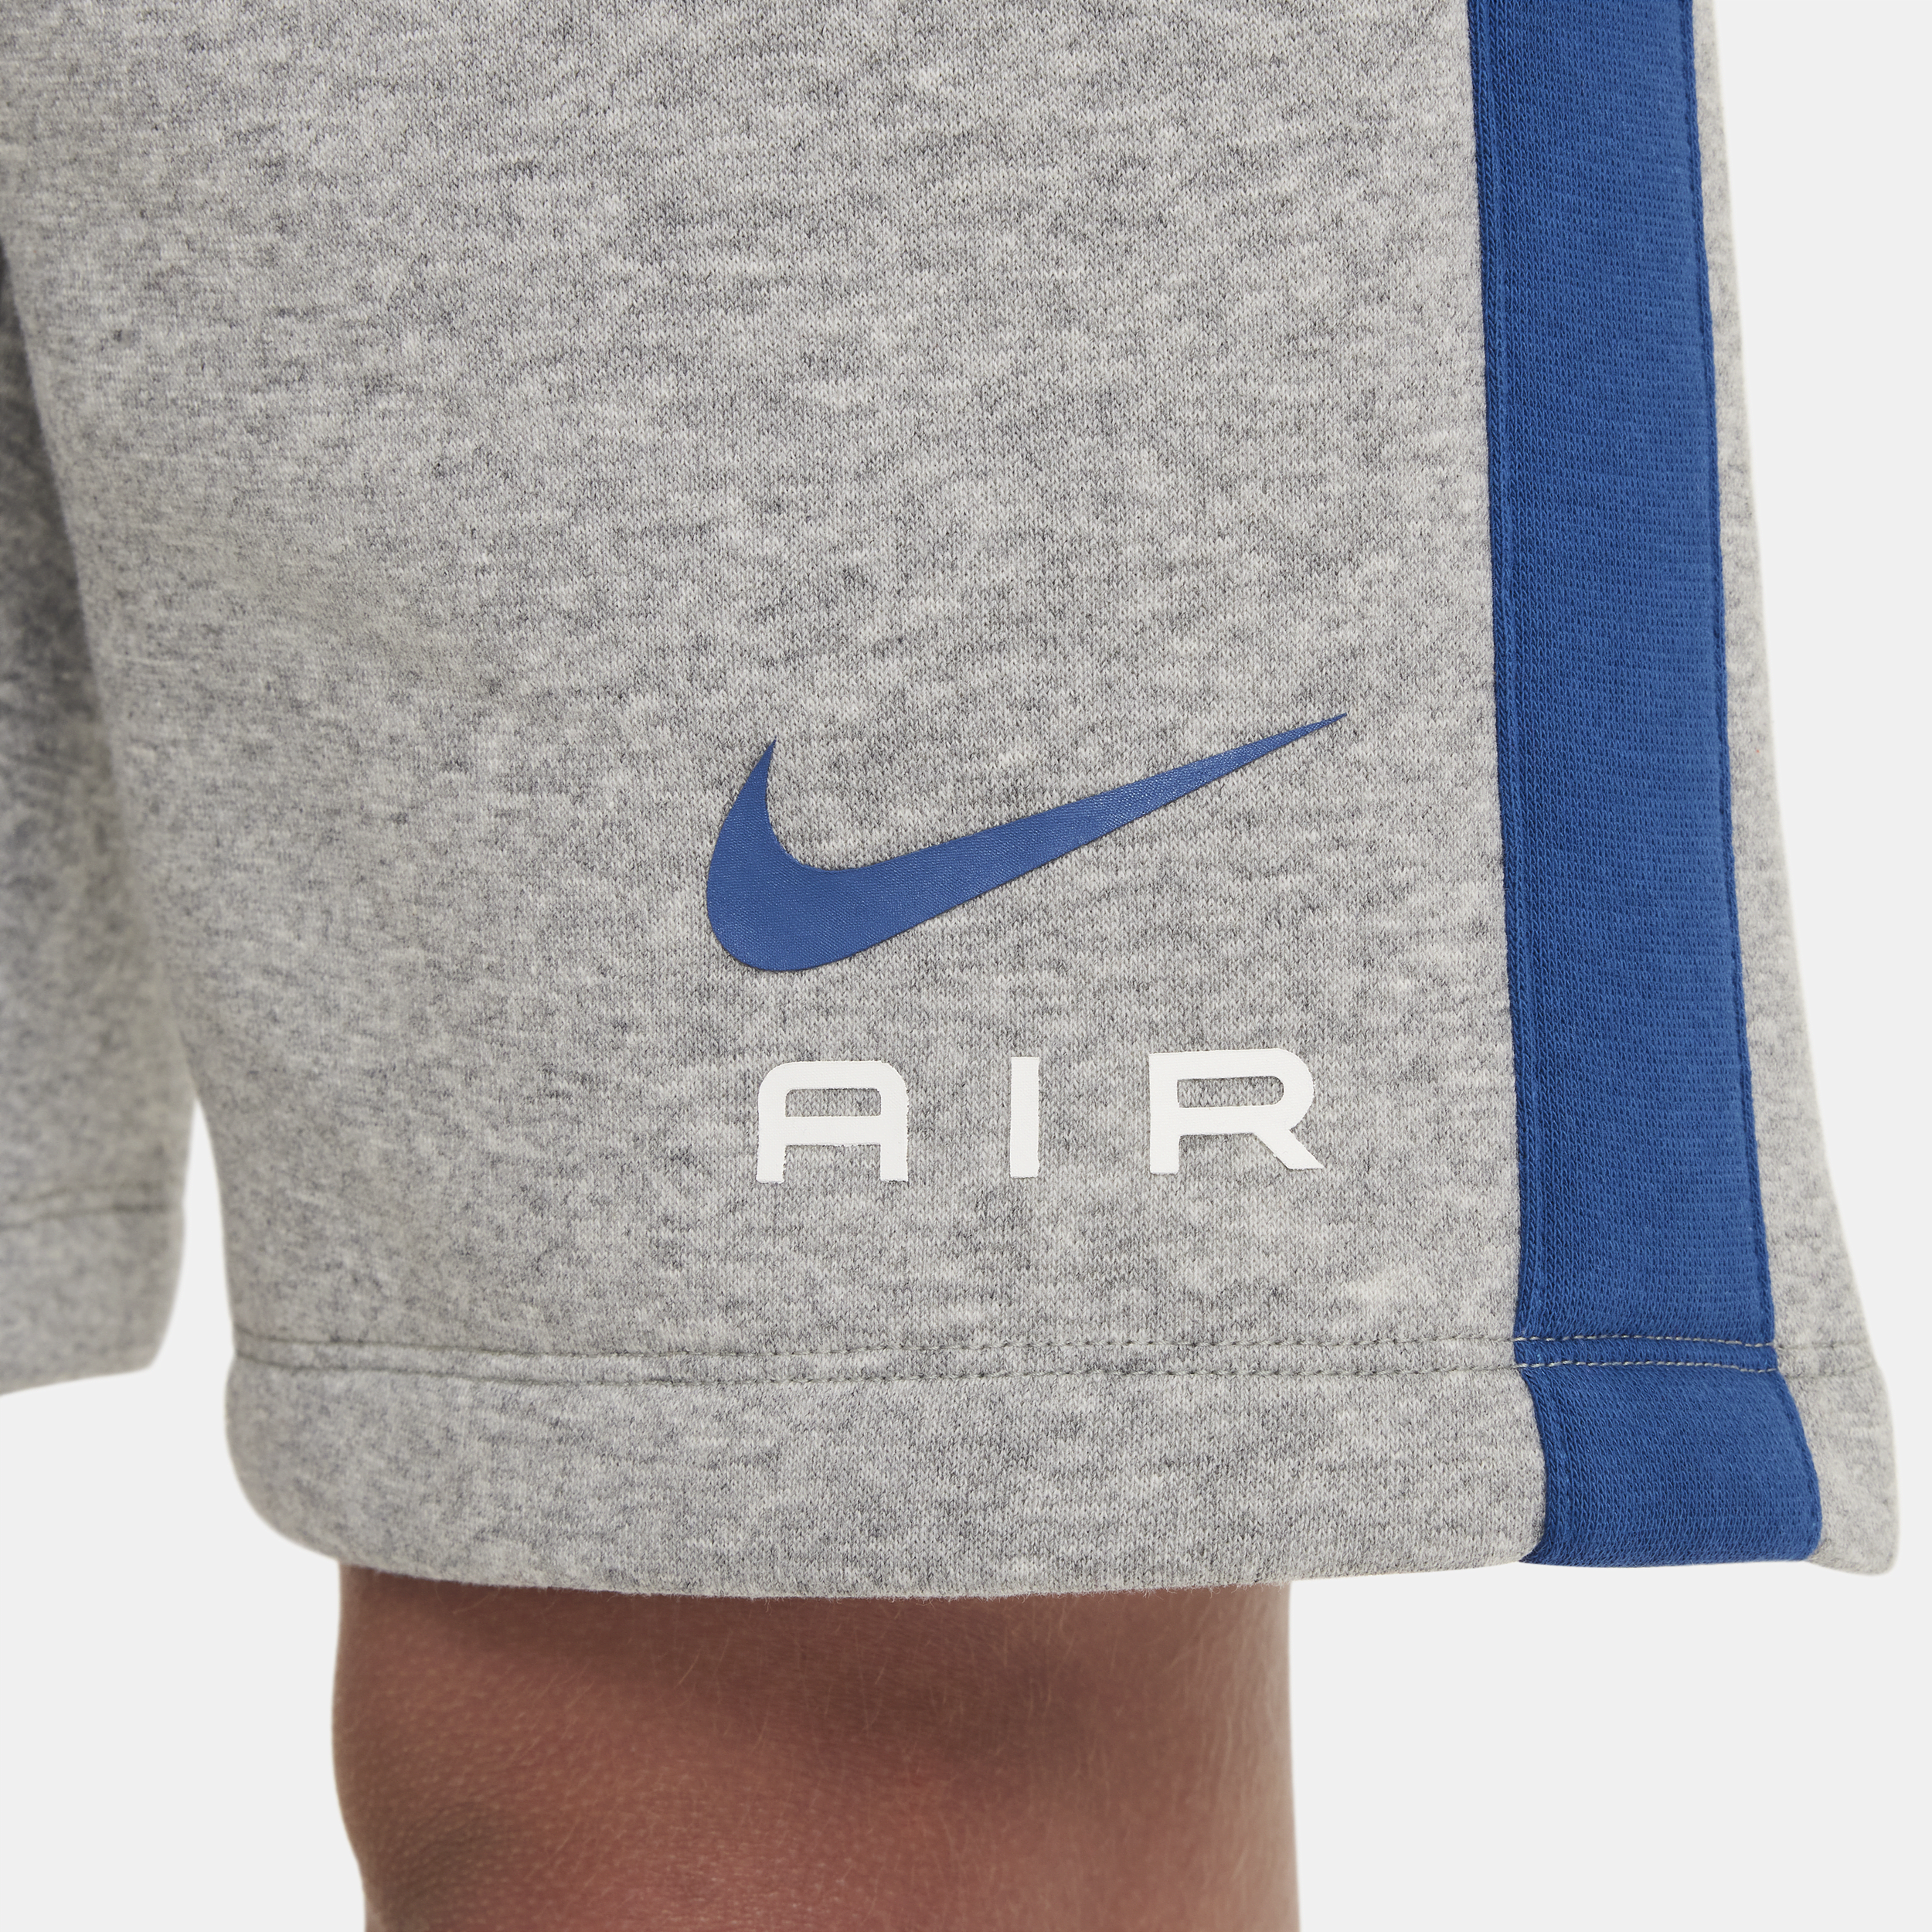 Nike Air fleeceshorts voor jongens Grijs